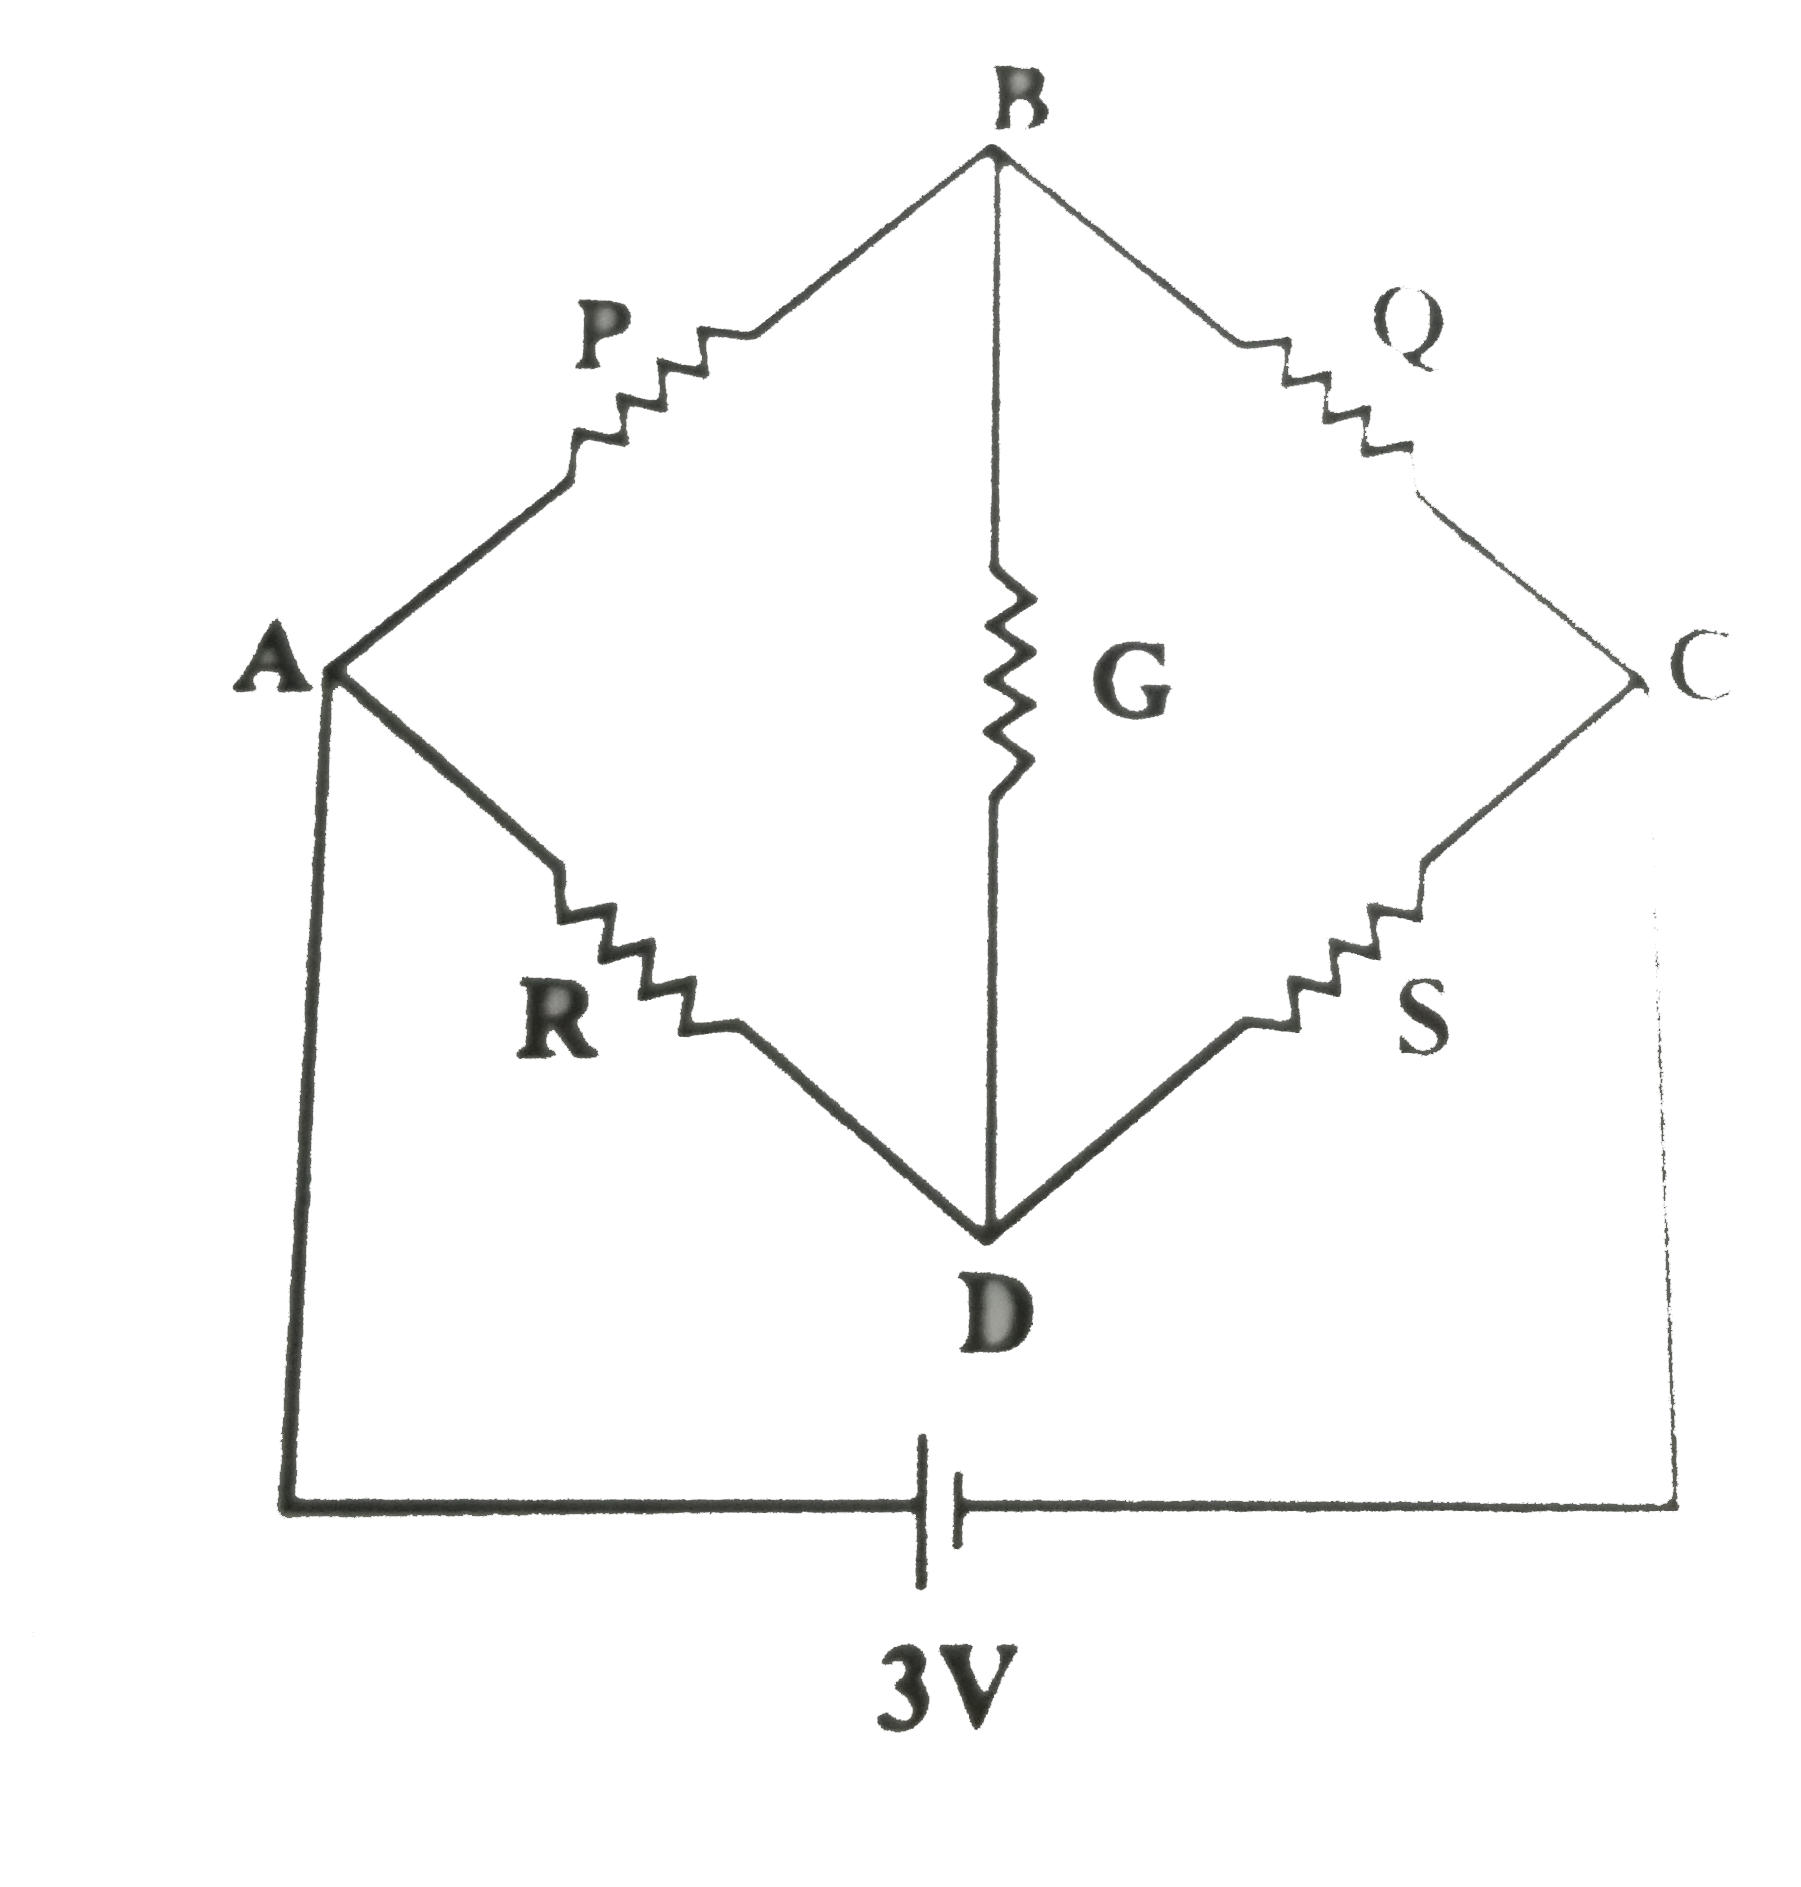 दिये गये चित्र में P=6Omega,Q=4Omega,R=12Omega,S=8Omega तथा G=6Omega सेल से ली गई धारा की गणना कीजिए।